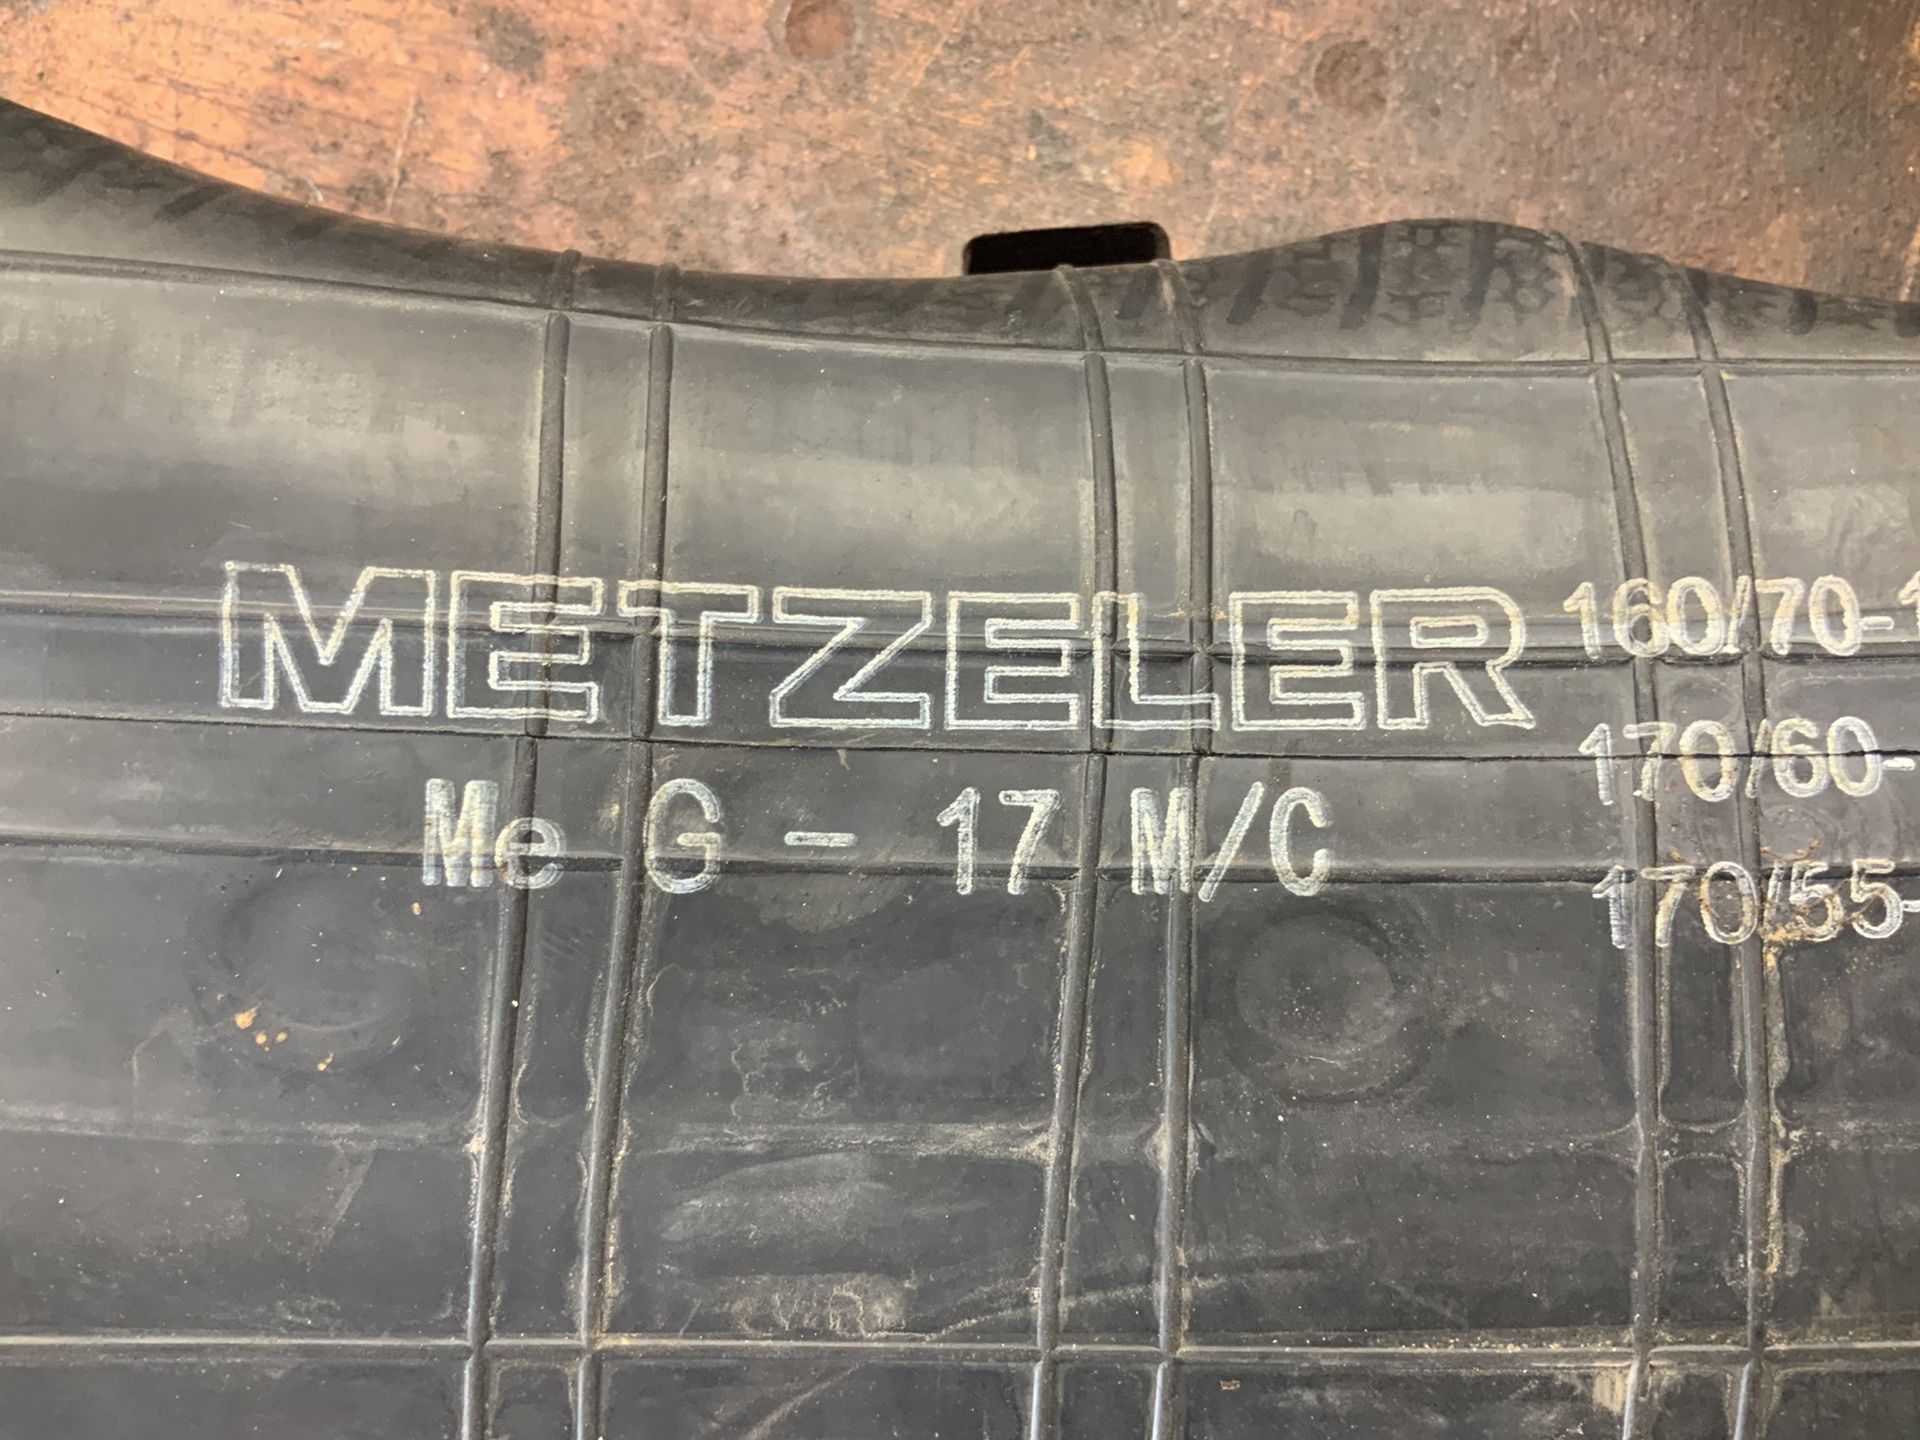 Metzeler 17” Tube